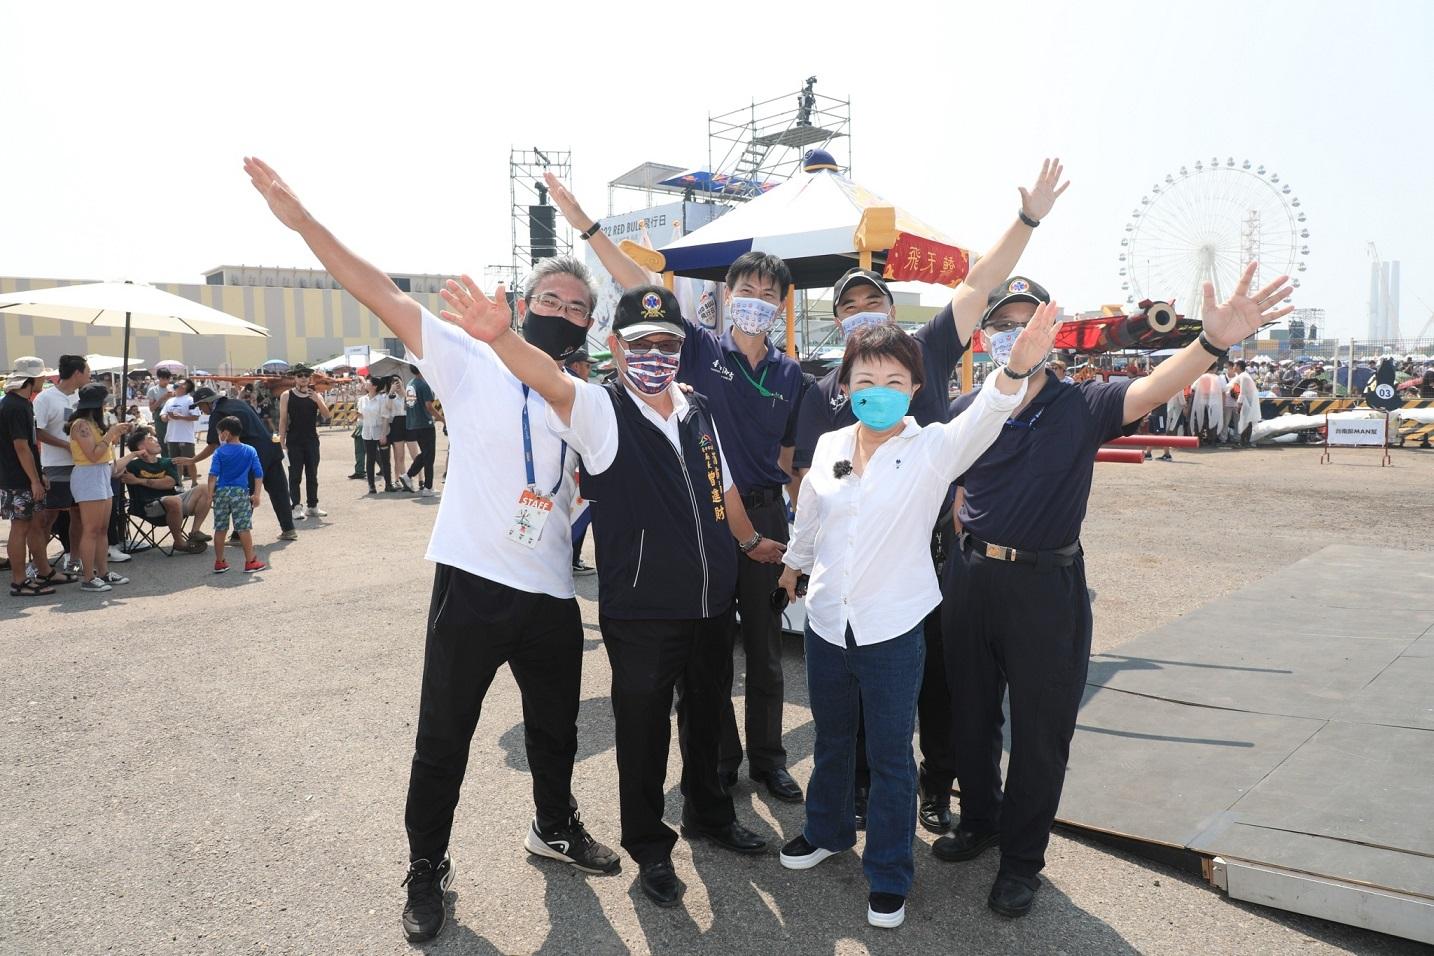 2022.09.18_亞洲唯一Red Bull飛行日在台中 盧市長：台中起飛航向國際